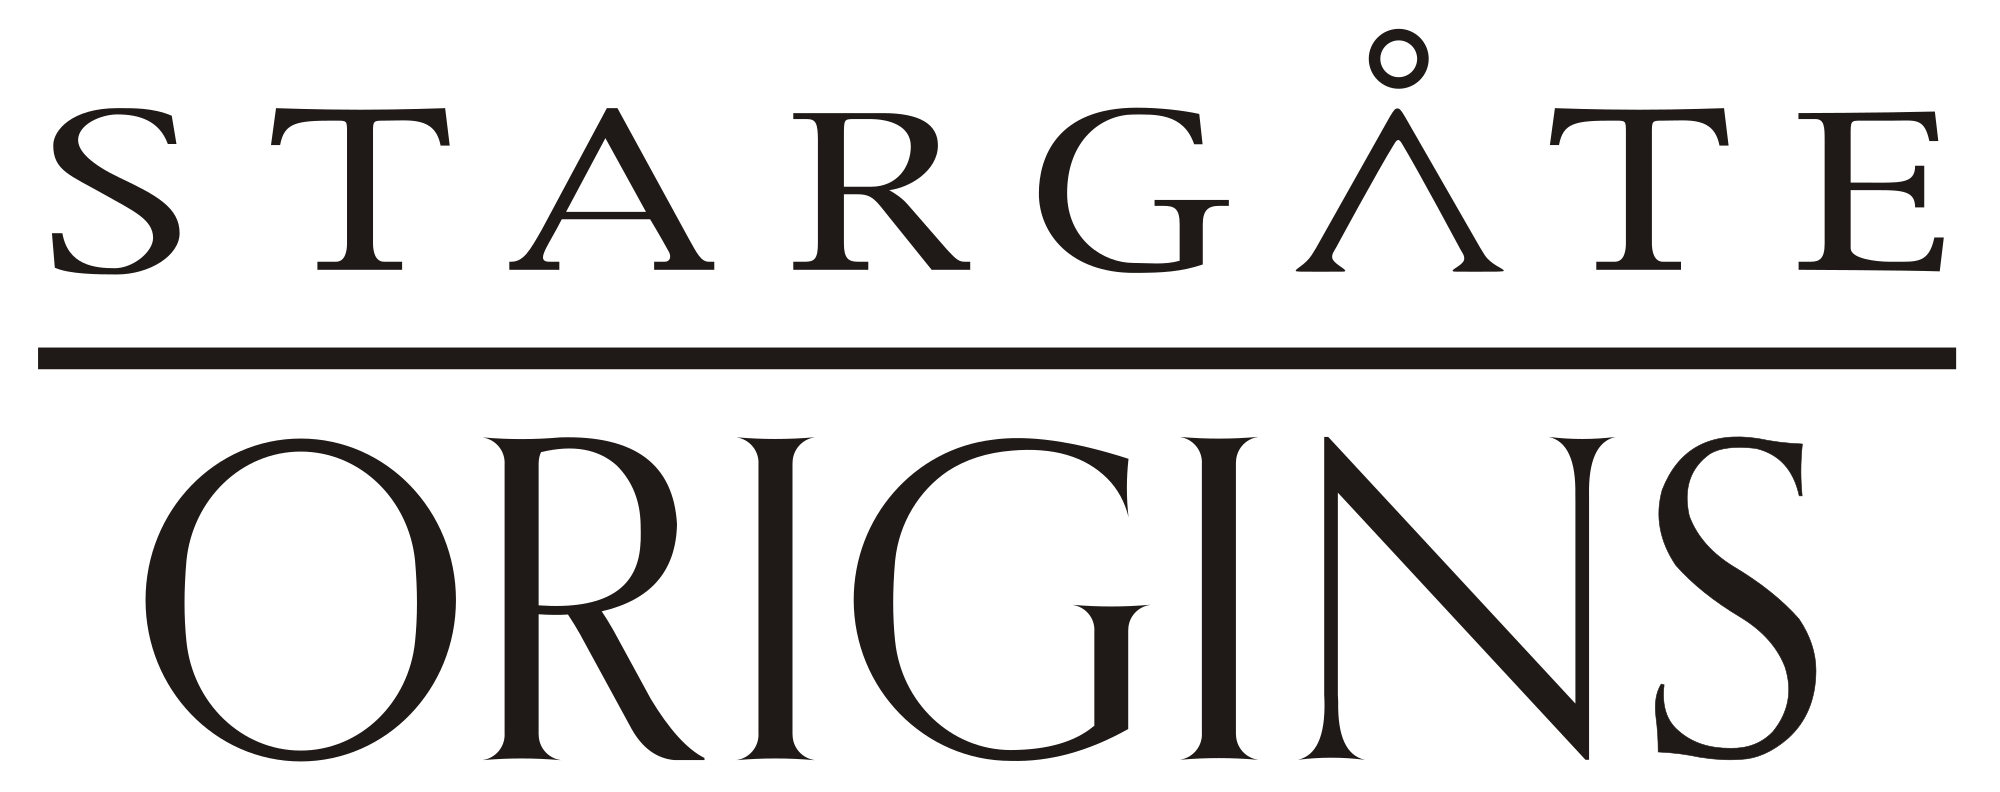 Origins Logo - Stargate Origins 2018 logo.svg